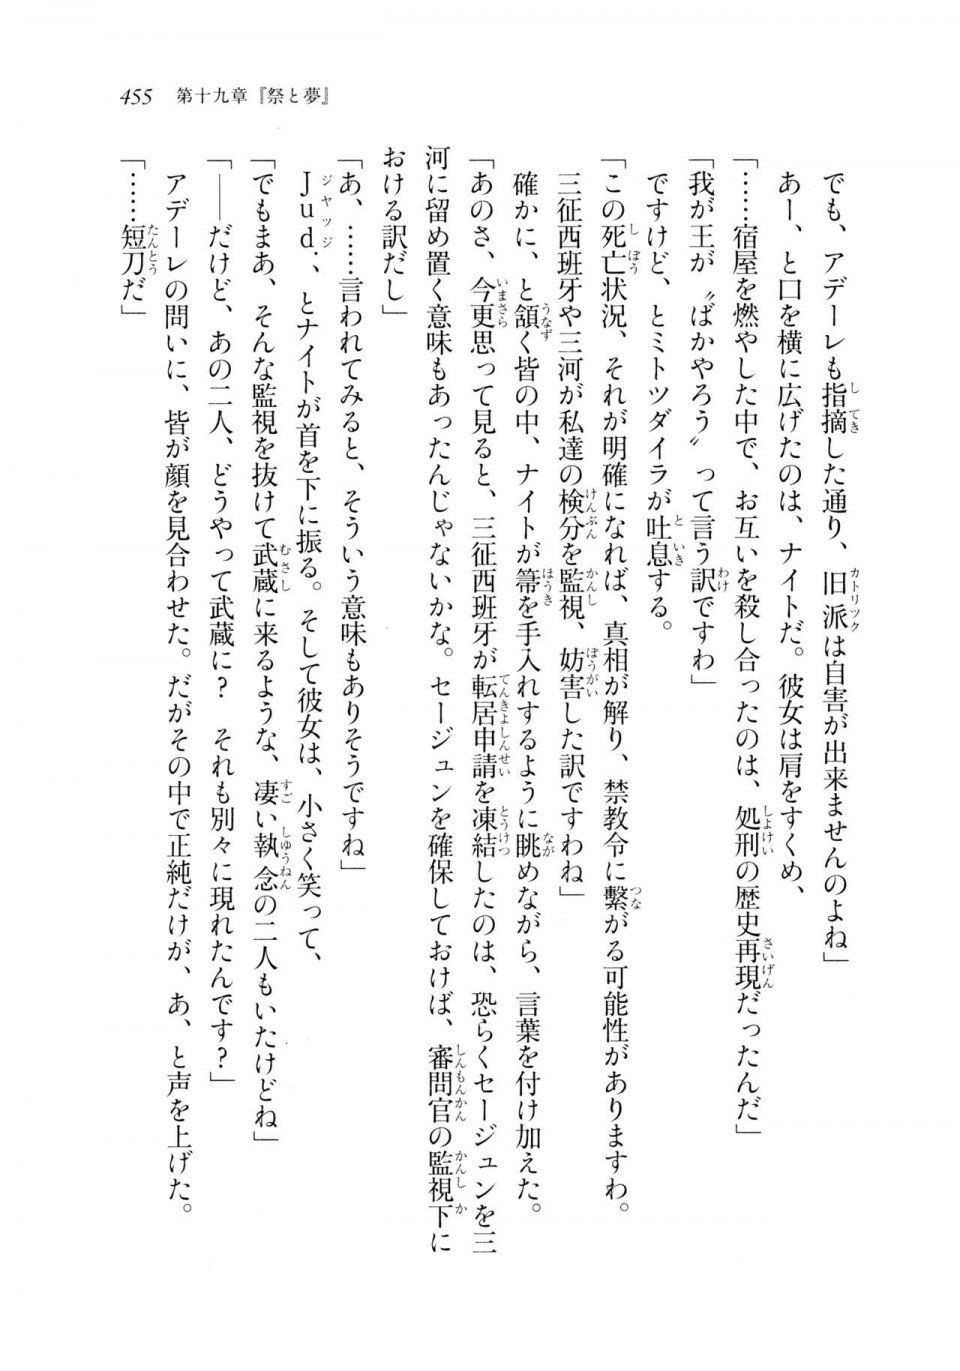 Kyoukai Senjou no Horizon LN Sidestory Vol 2 - Photo #453